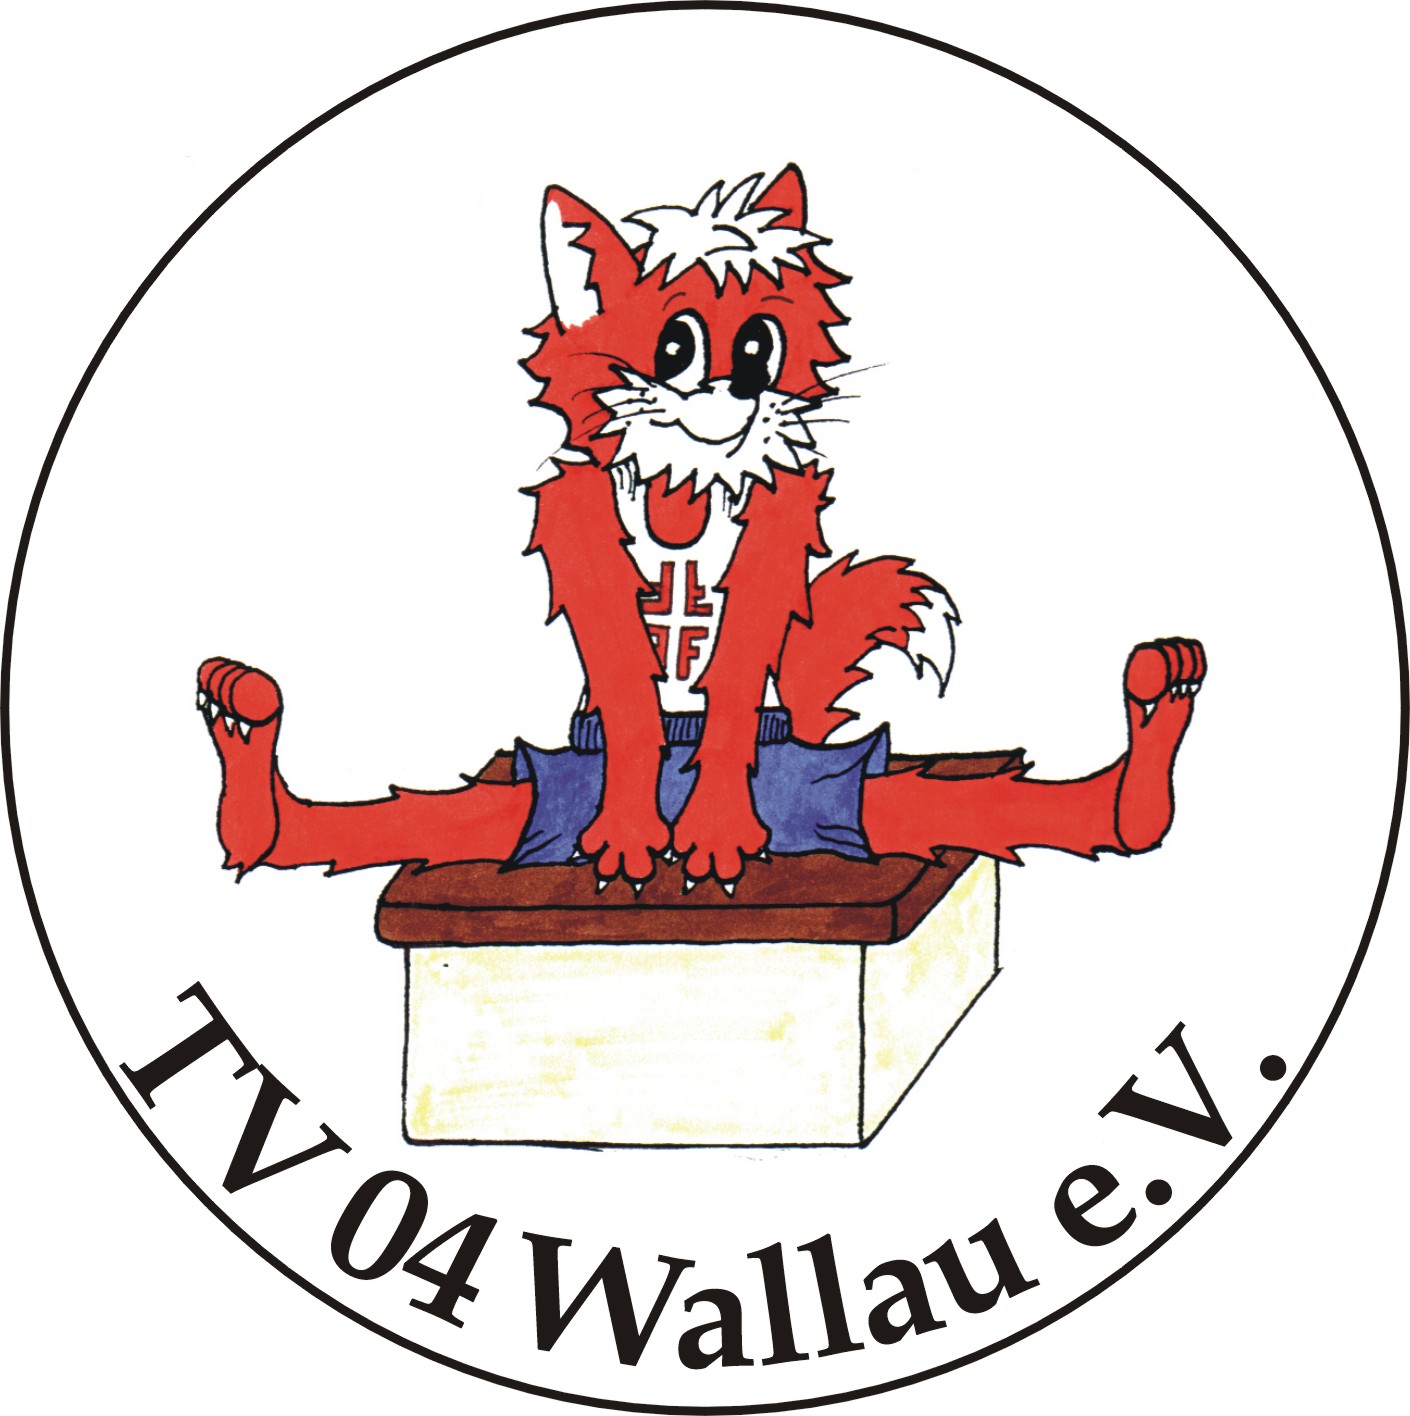 TV 04 Wallau Logo